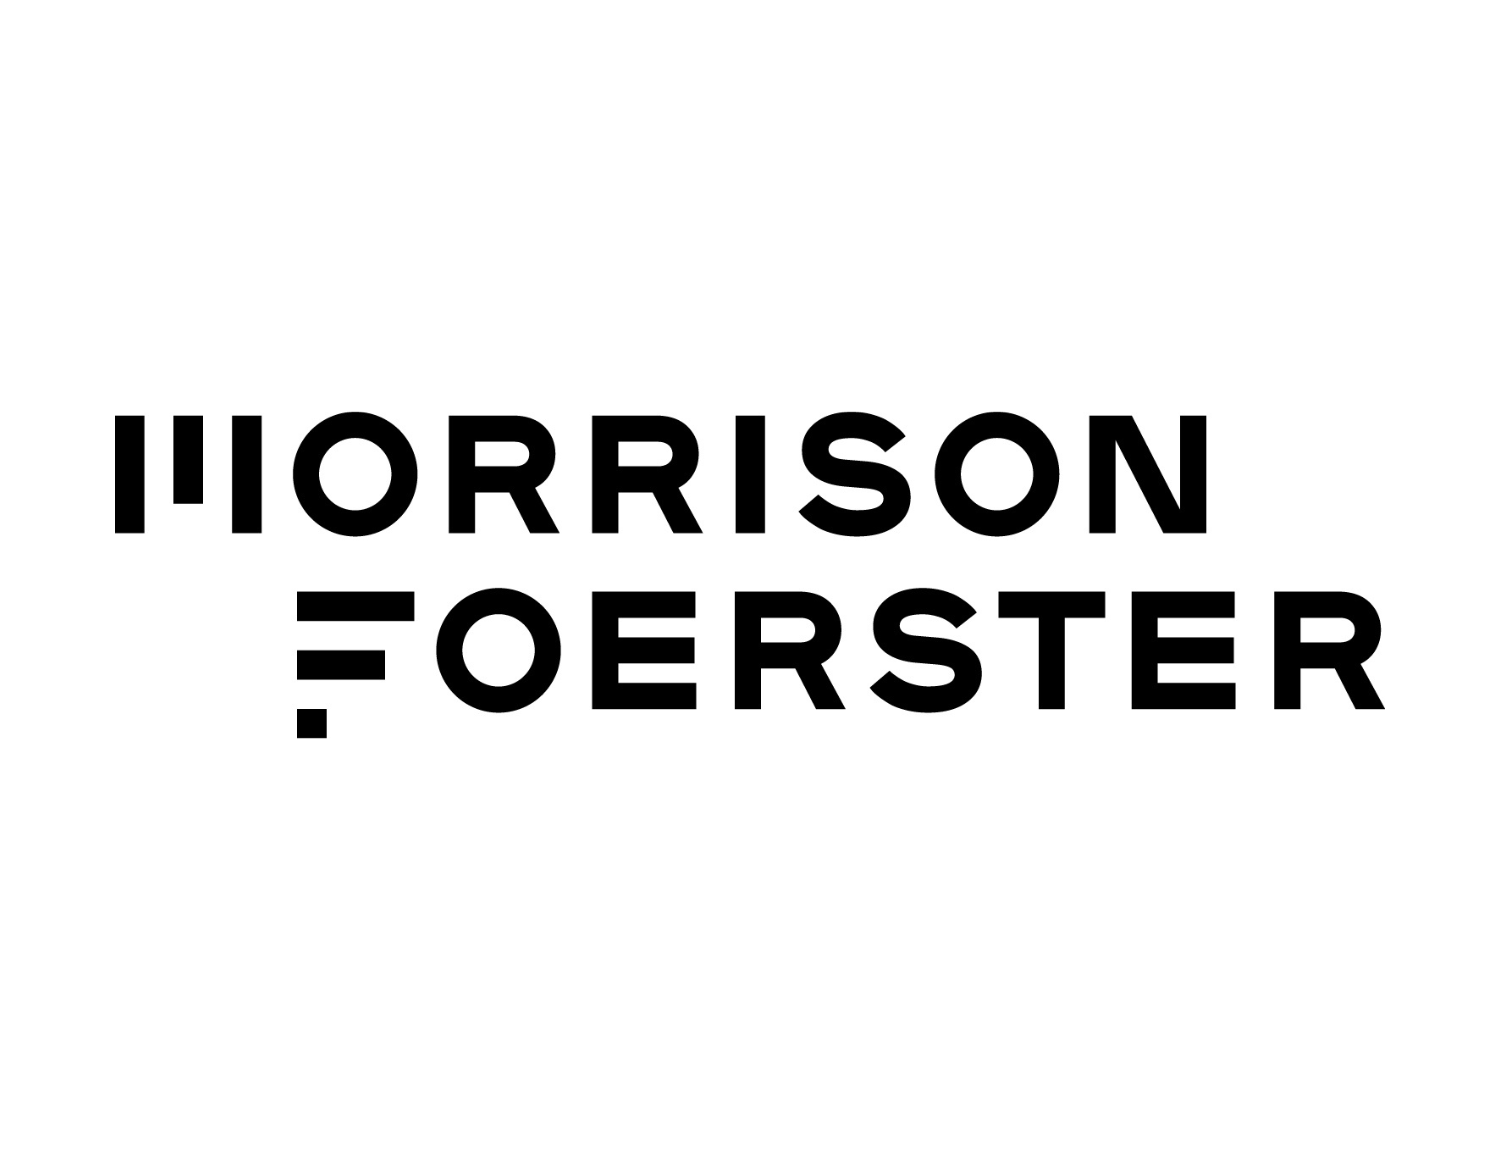 Morrison & Foerster LLP Logo